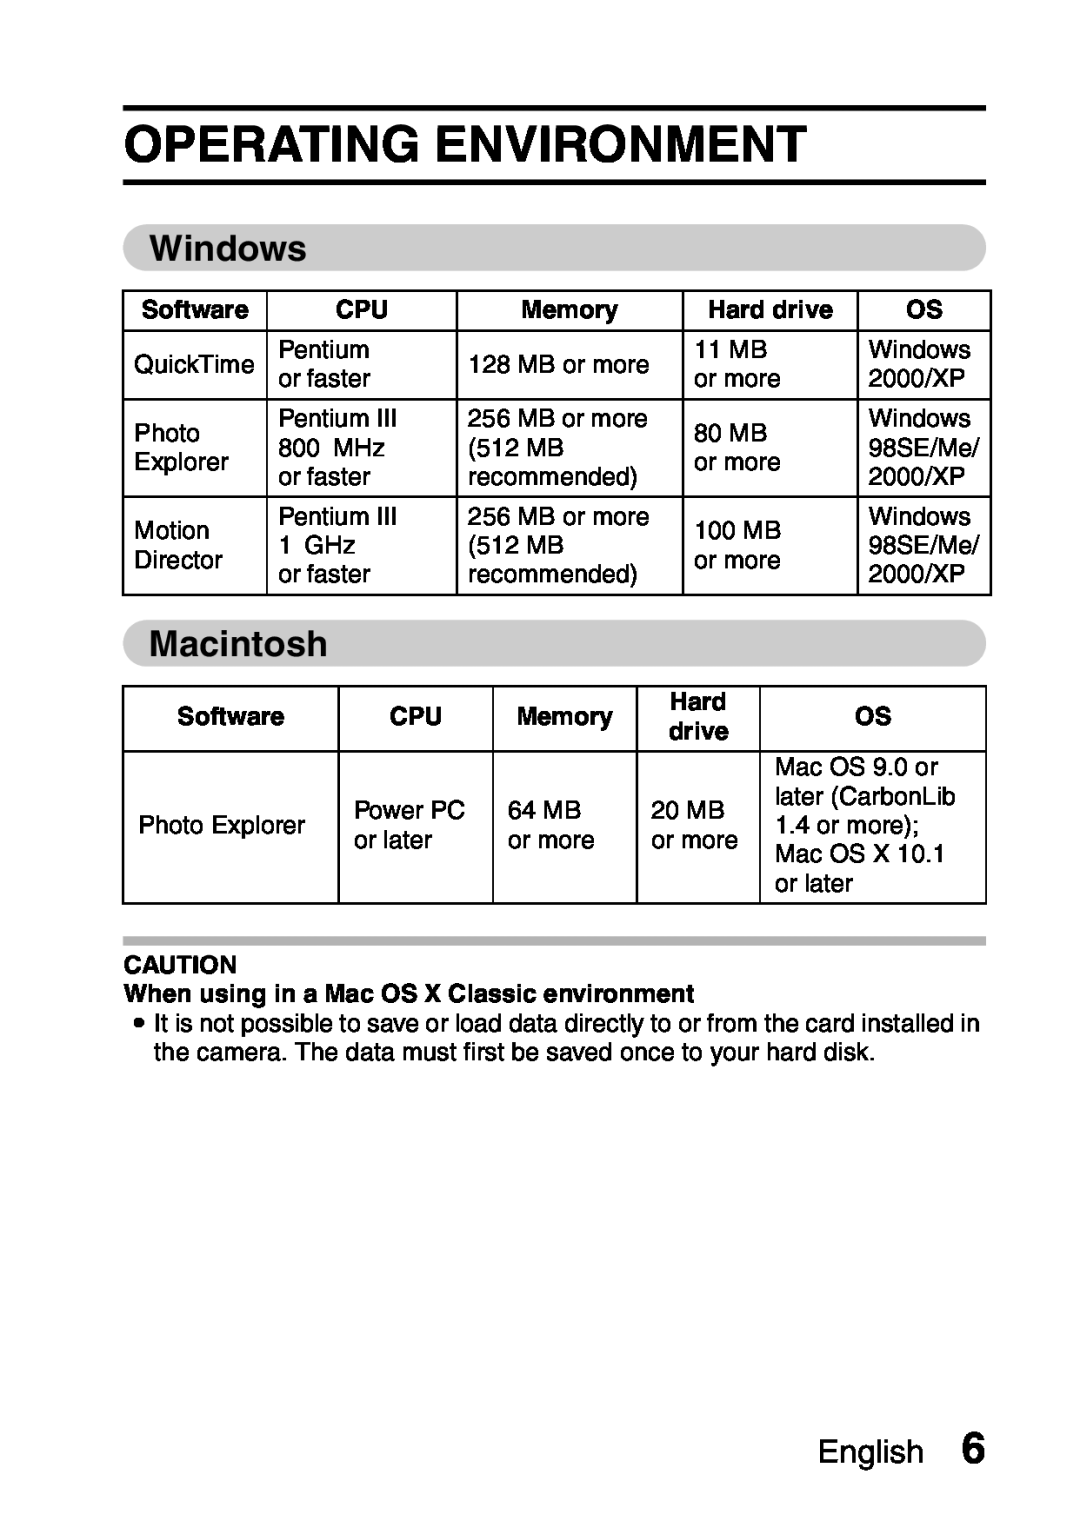 Sanyo VPC-S60 instruction manual Operating Environment, Windows, Macintosh, Software, Memory, Hard drive, English 